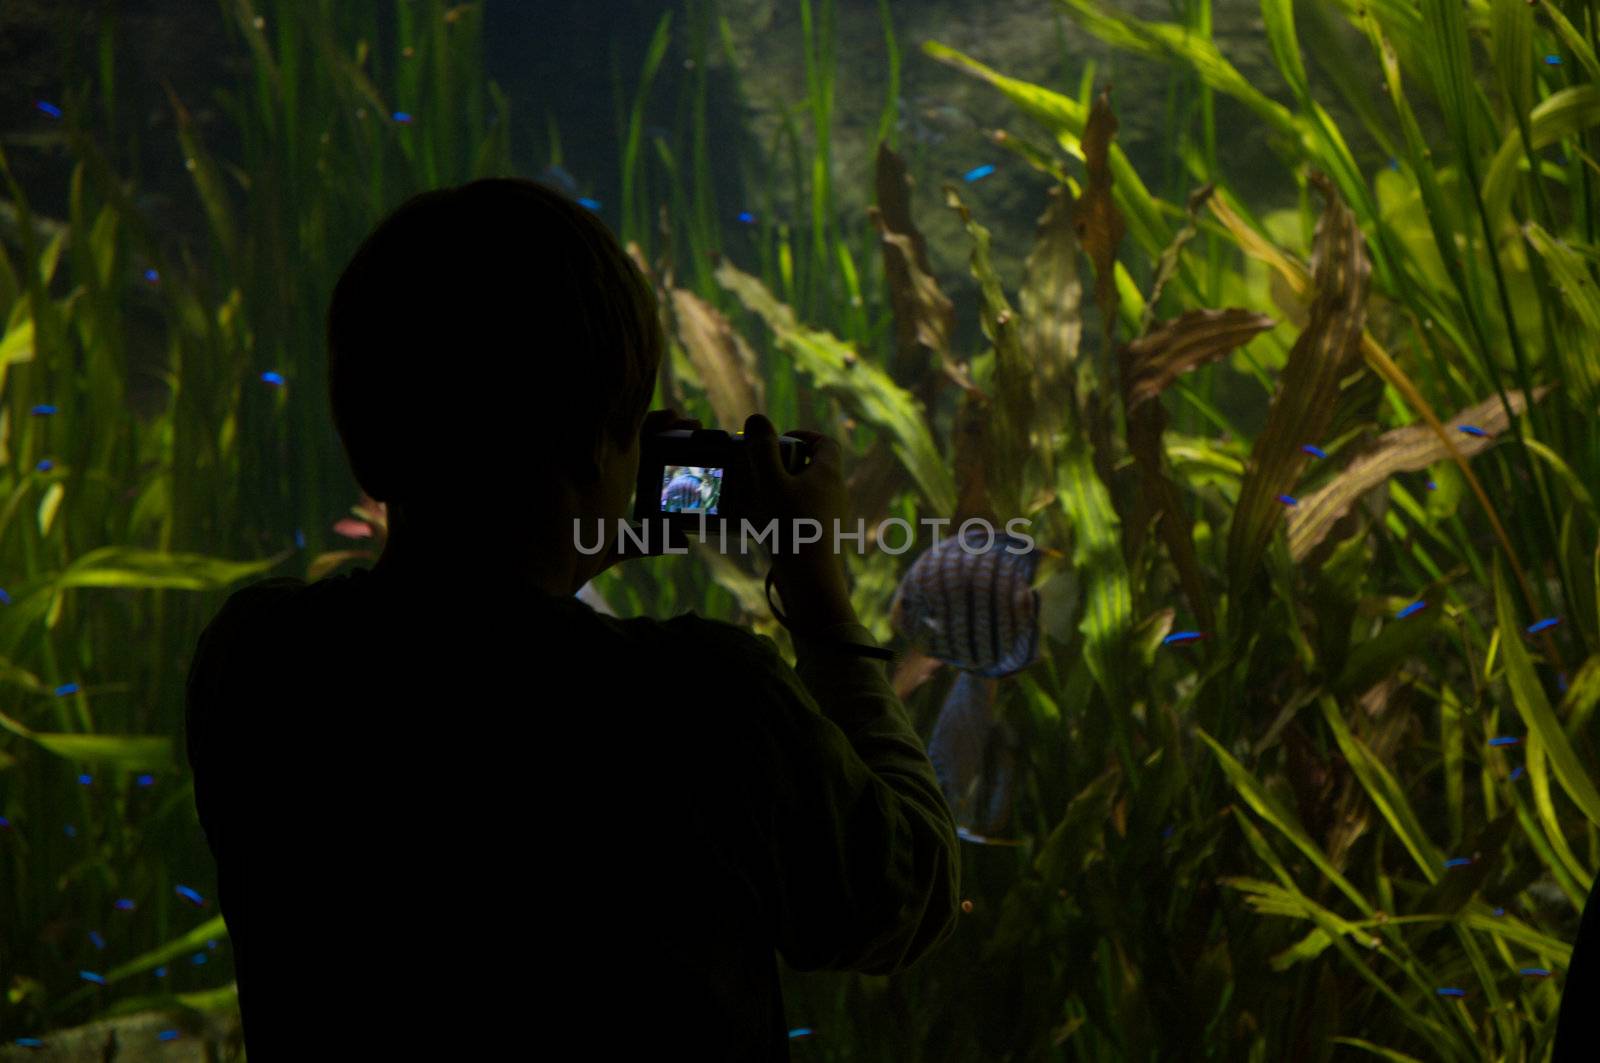 Children taking pictures of fish in an aquarium
